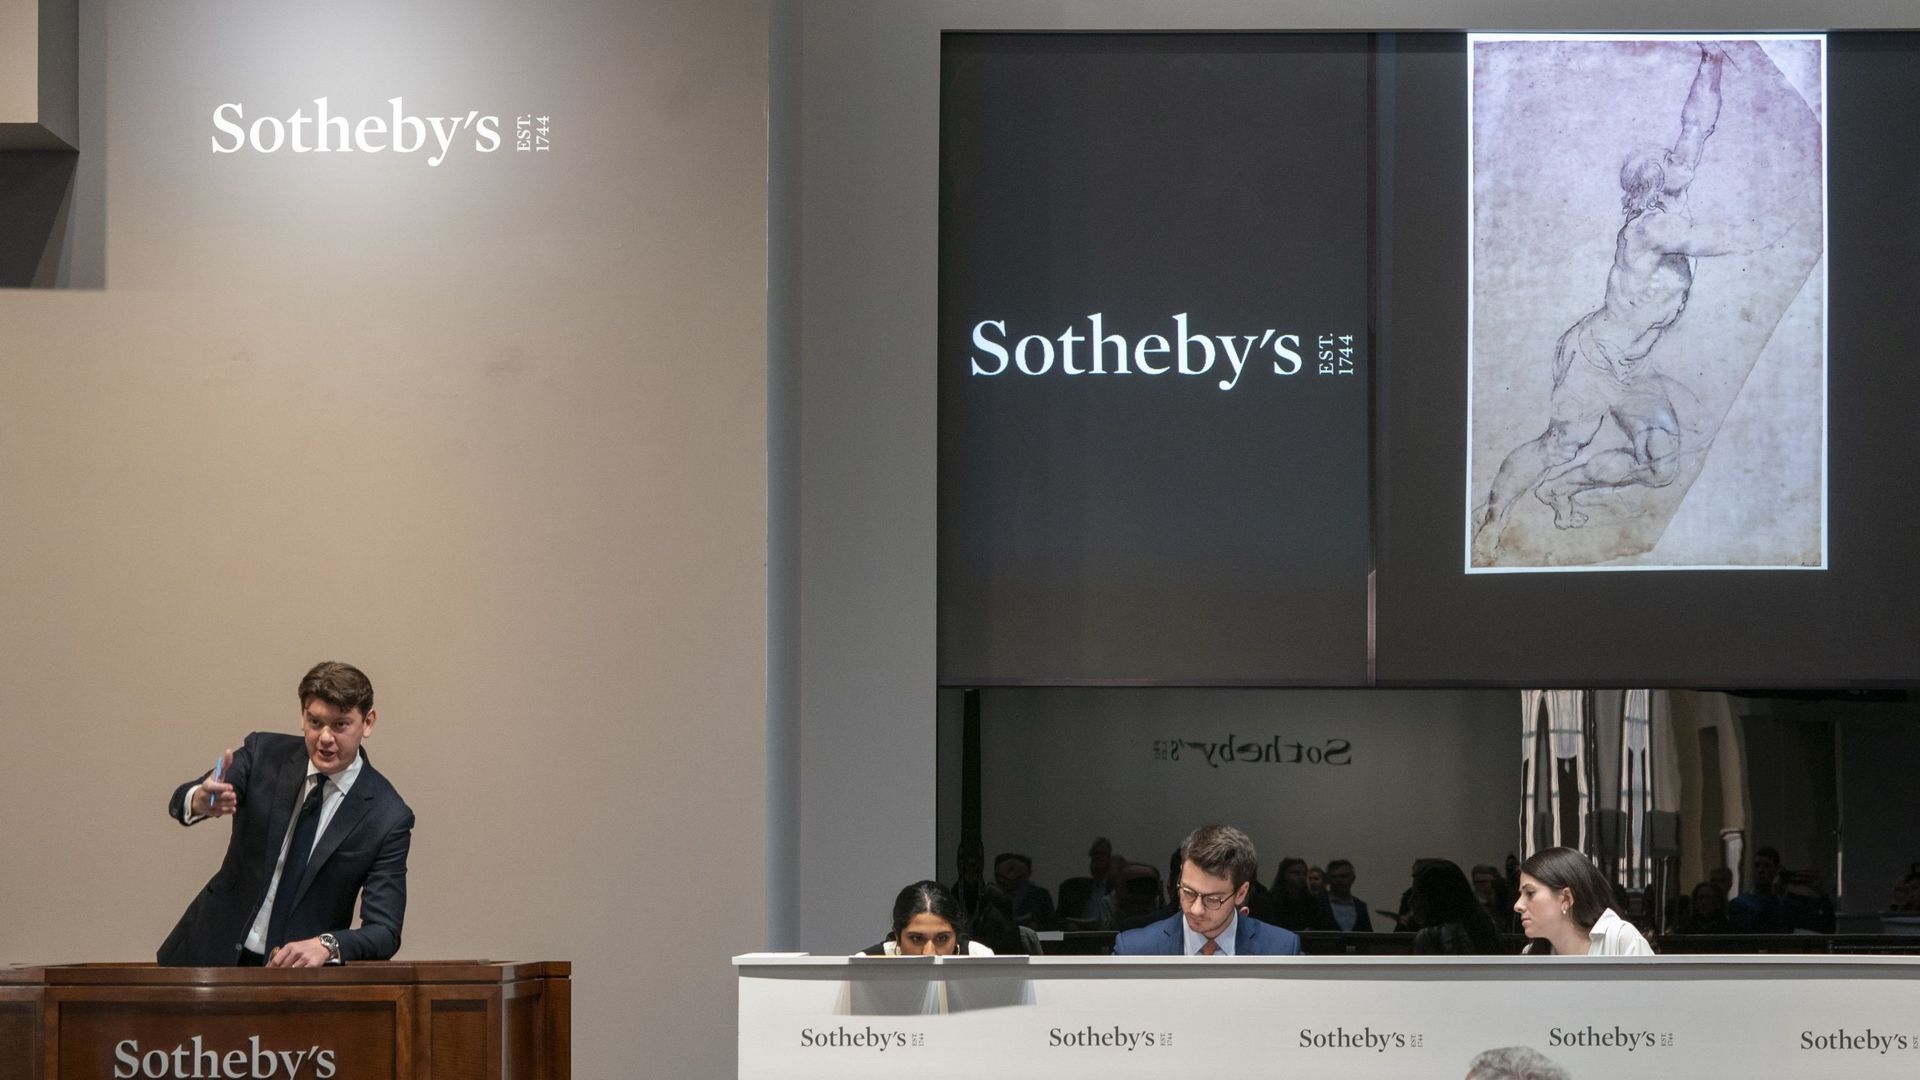 Un dessin de Rubens vendu 8,2 millions de dollars lors d'une enchère controversée